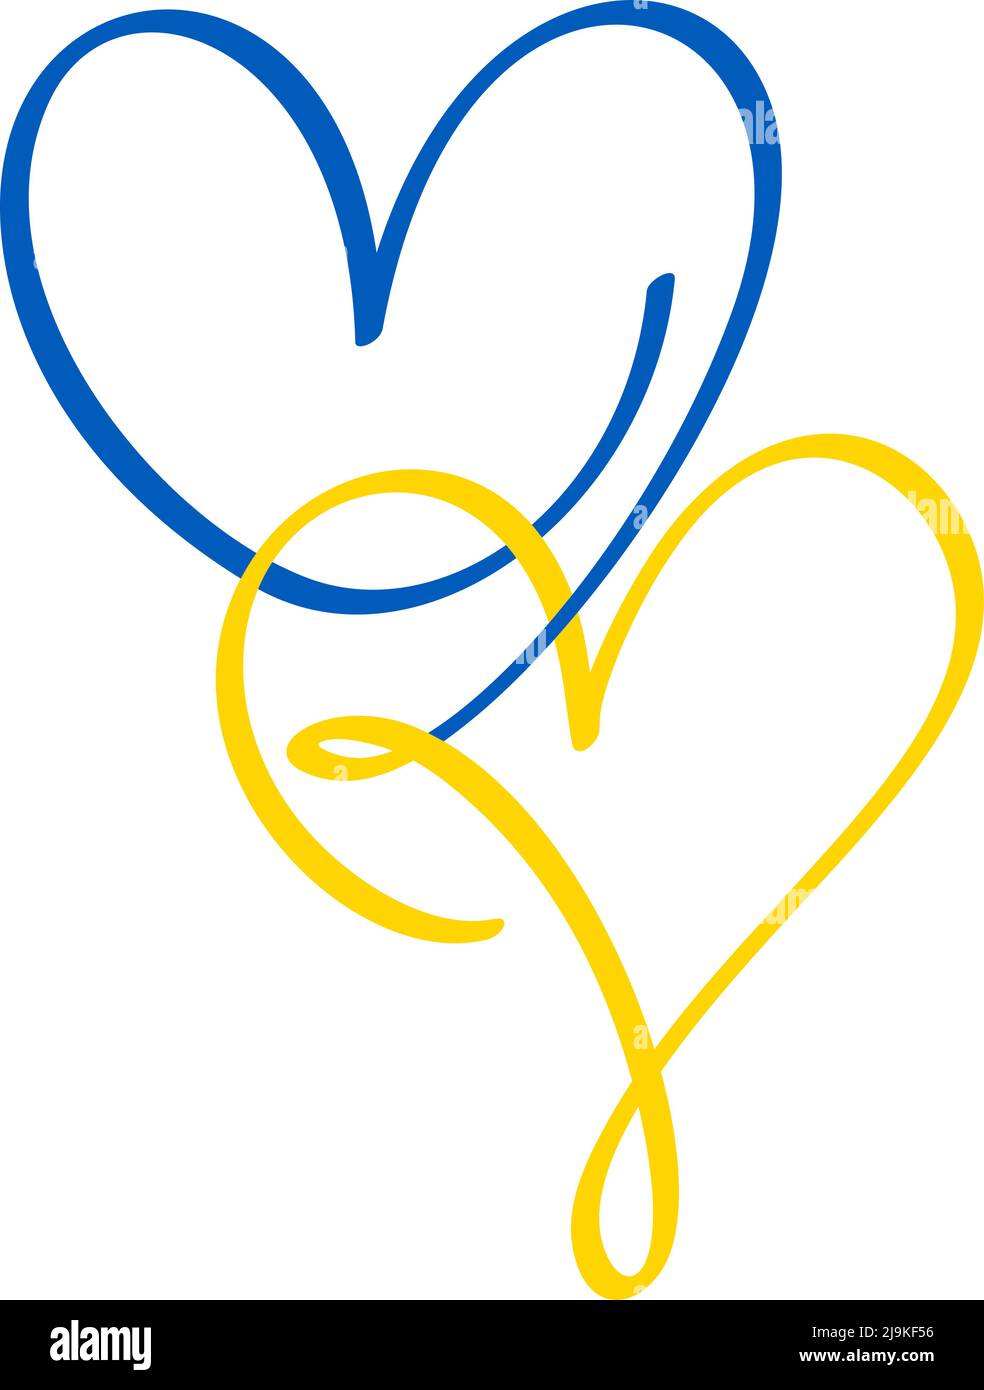 Blaue und gelbe Kalligraphie zwei Liebhaber Ukraine Herzen. Handgezeichnetes Symbol Logo Vektor Familie valentinstag. Dekor für Grußkarte, Becher, Fotoüberzüge Stock Vektor